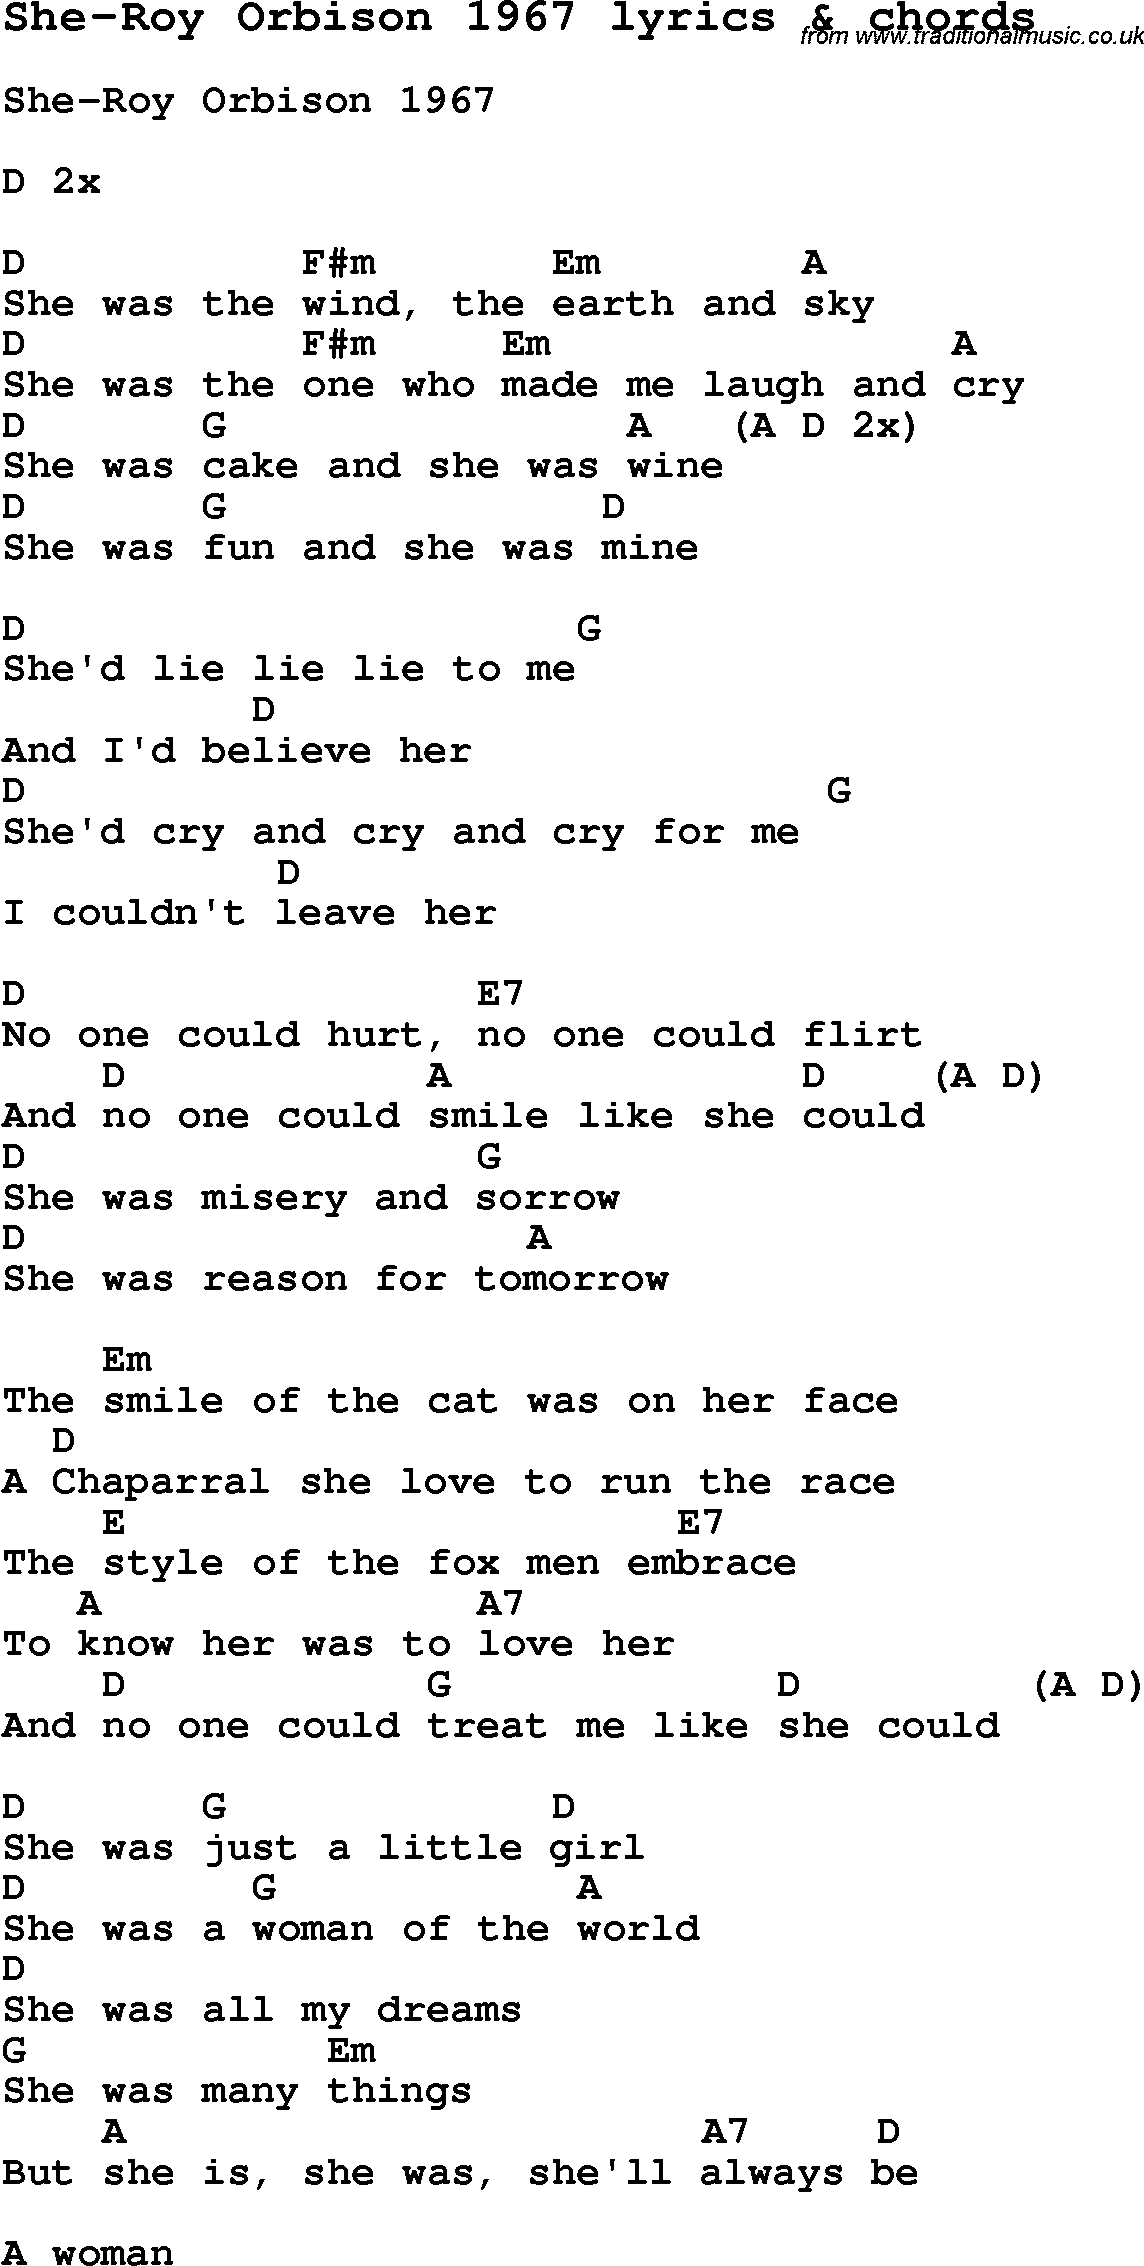 Love Song Lyrics for: She-Roy Orbison 1967 with chords for Ukulele, Guitar Banjo etc.